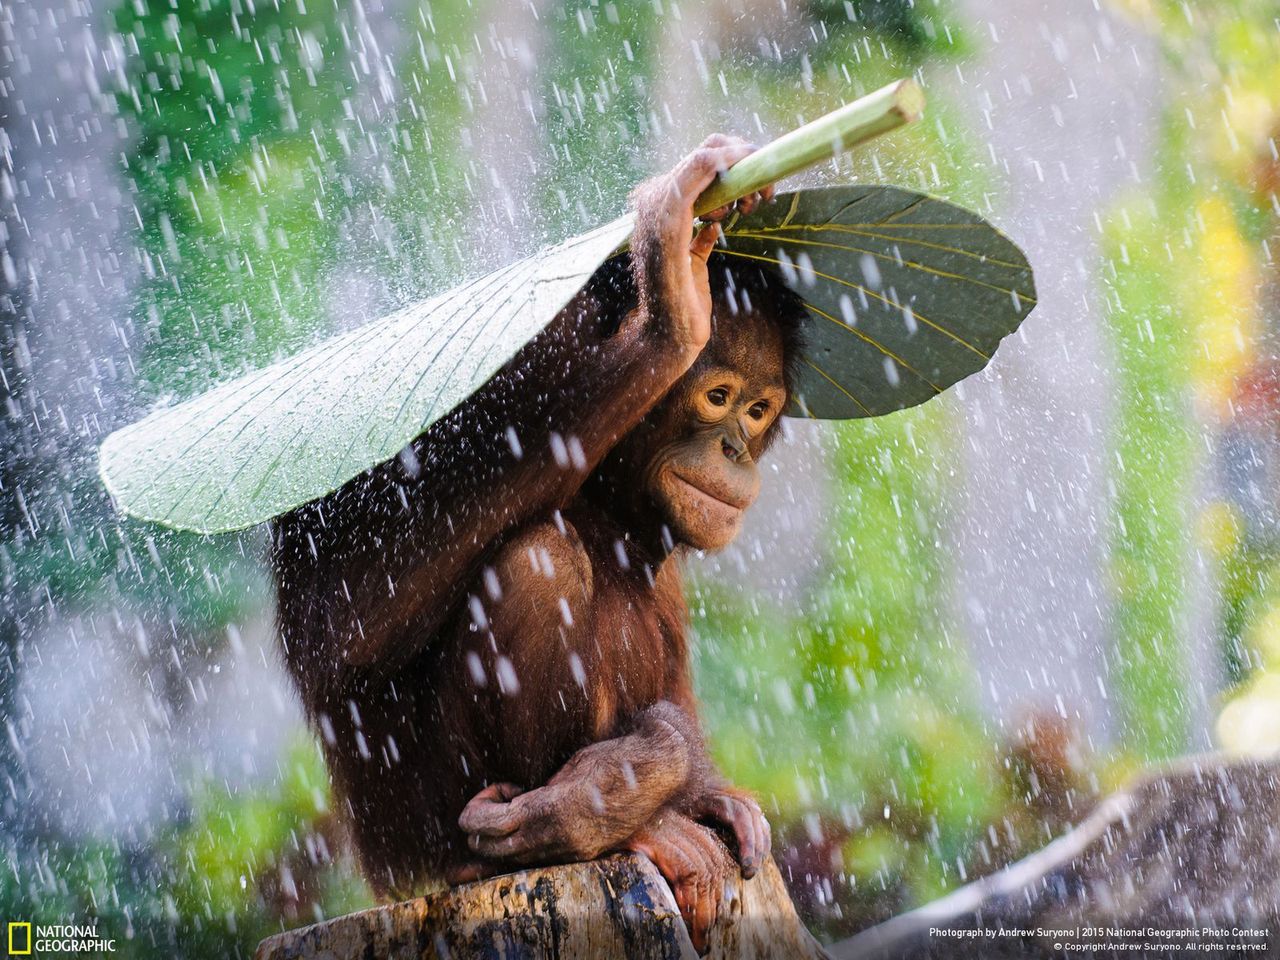 Andrew Suryono fotografował orangutany na Bali podczas gdy zaczęło padać. Jeden z nich w pewnym momencie wziął ogromny liść i położył sobie na głowie by schronić się przed deszczem. Fotograf szybko pochwycił swój aparat, żeby ująć ten spontaniczny niesamowity moment.